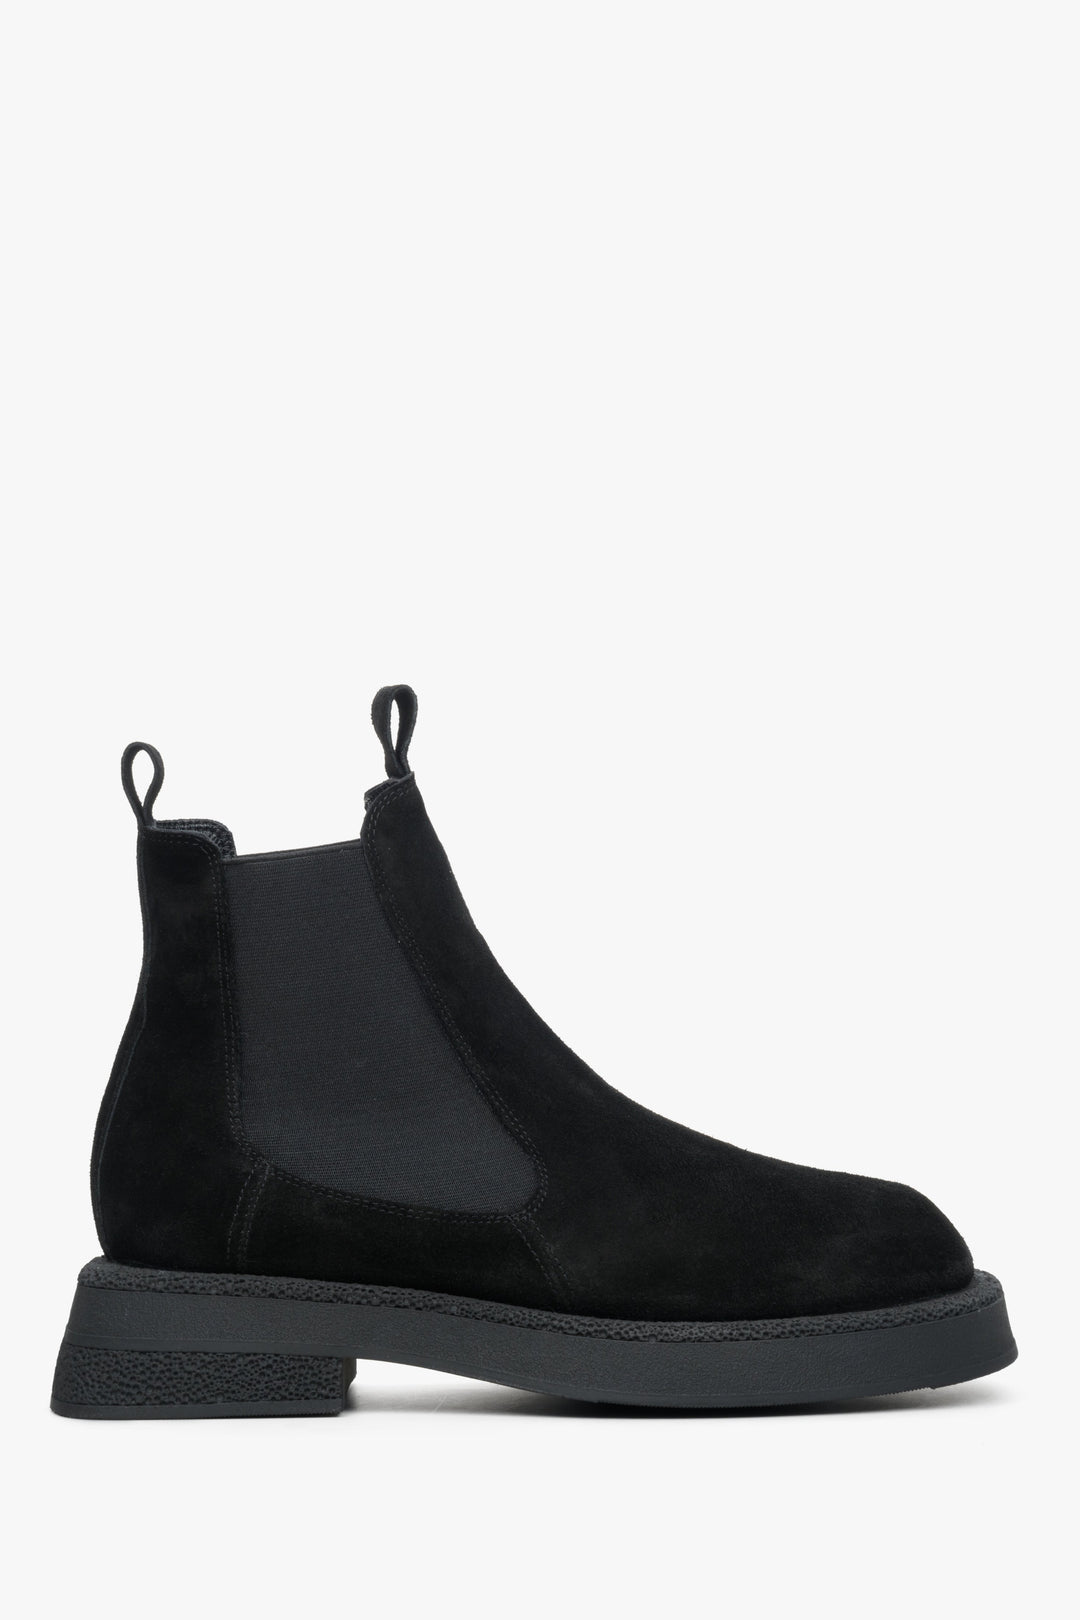 Women's Low-Heeled Chelsea Boots in Black Suede Estro ER00114058